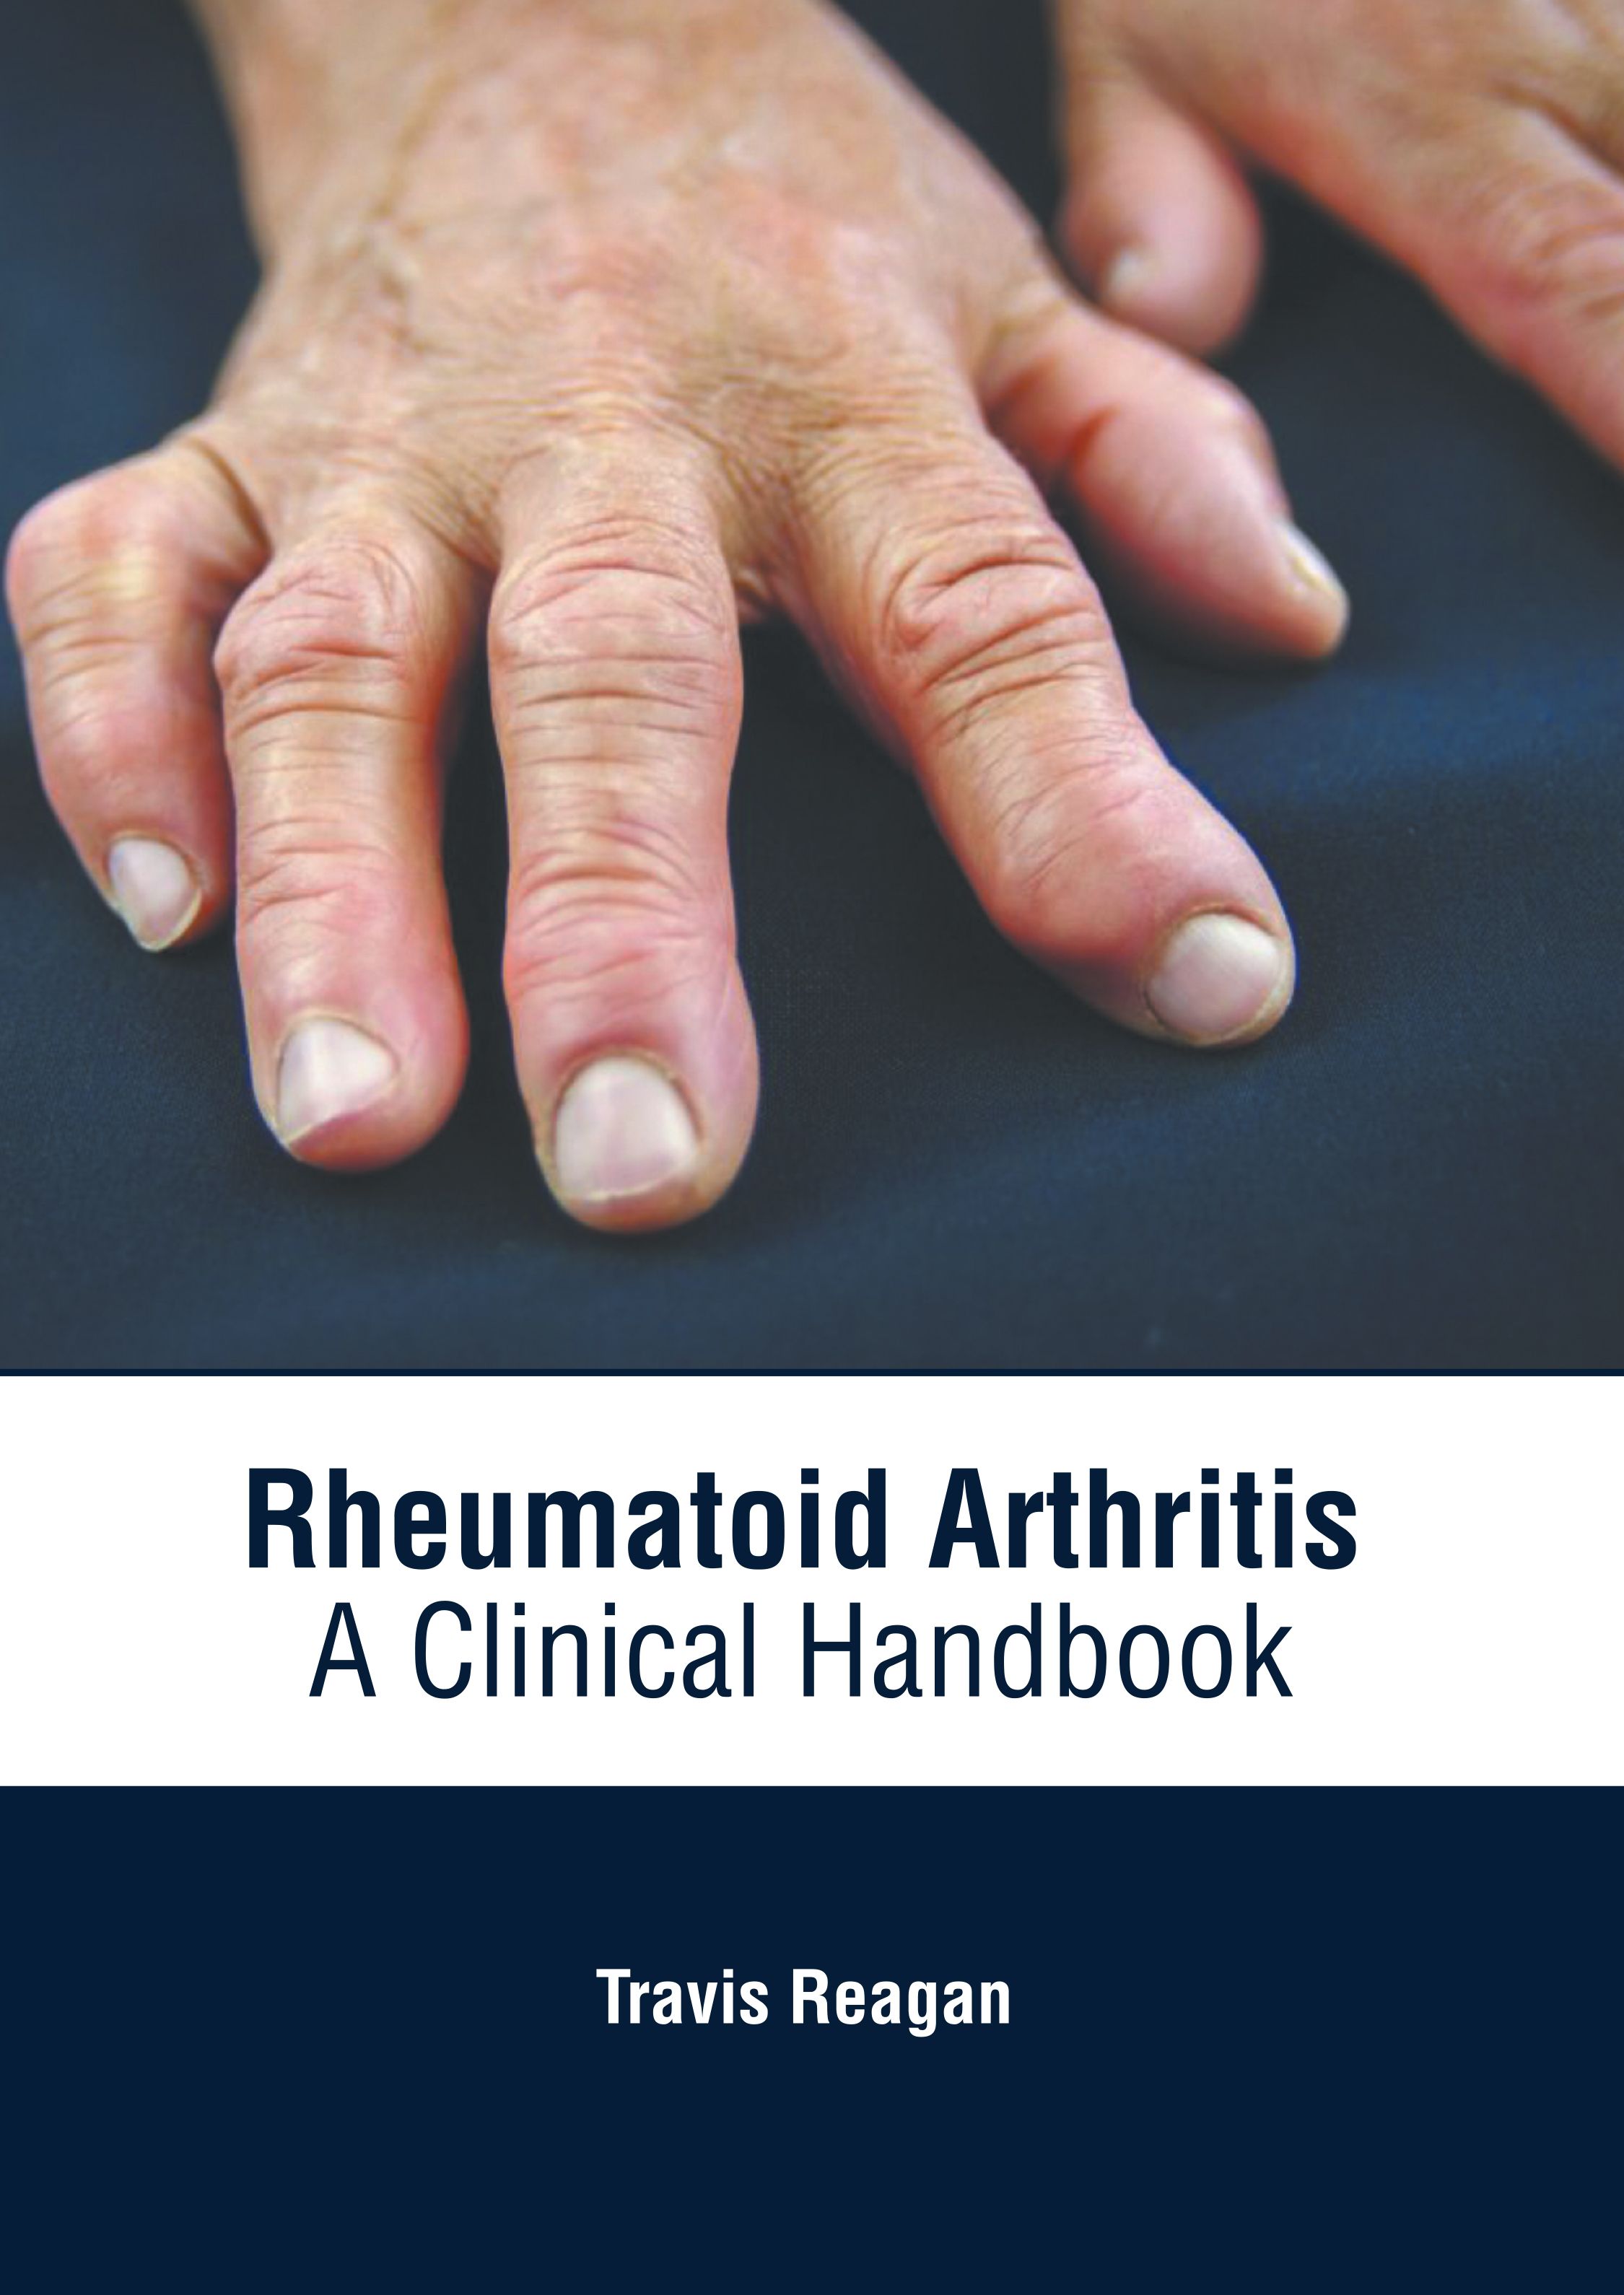 
medical-reference-books/orthopaedics/rheumatoid-arthritis-from-pathophysiology-to-management-9781639274758